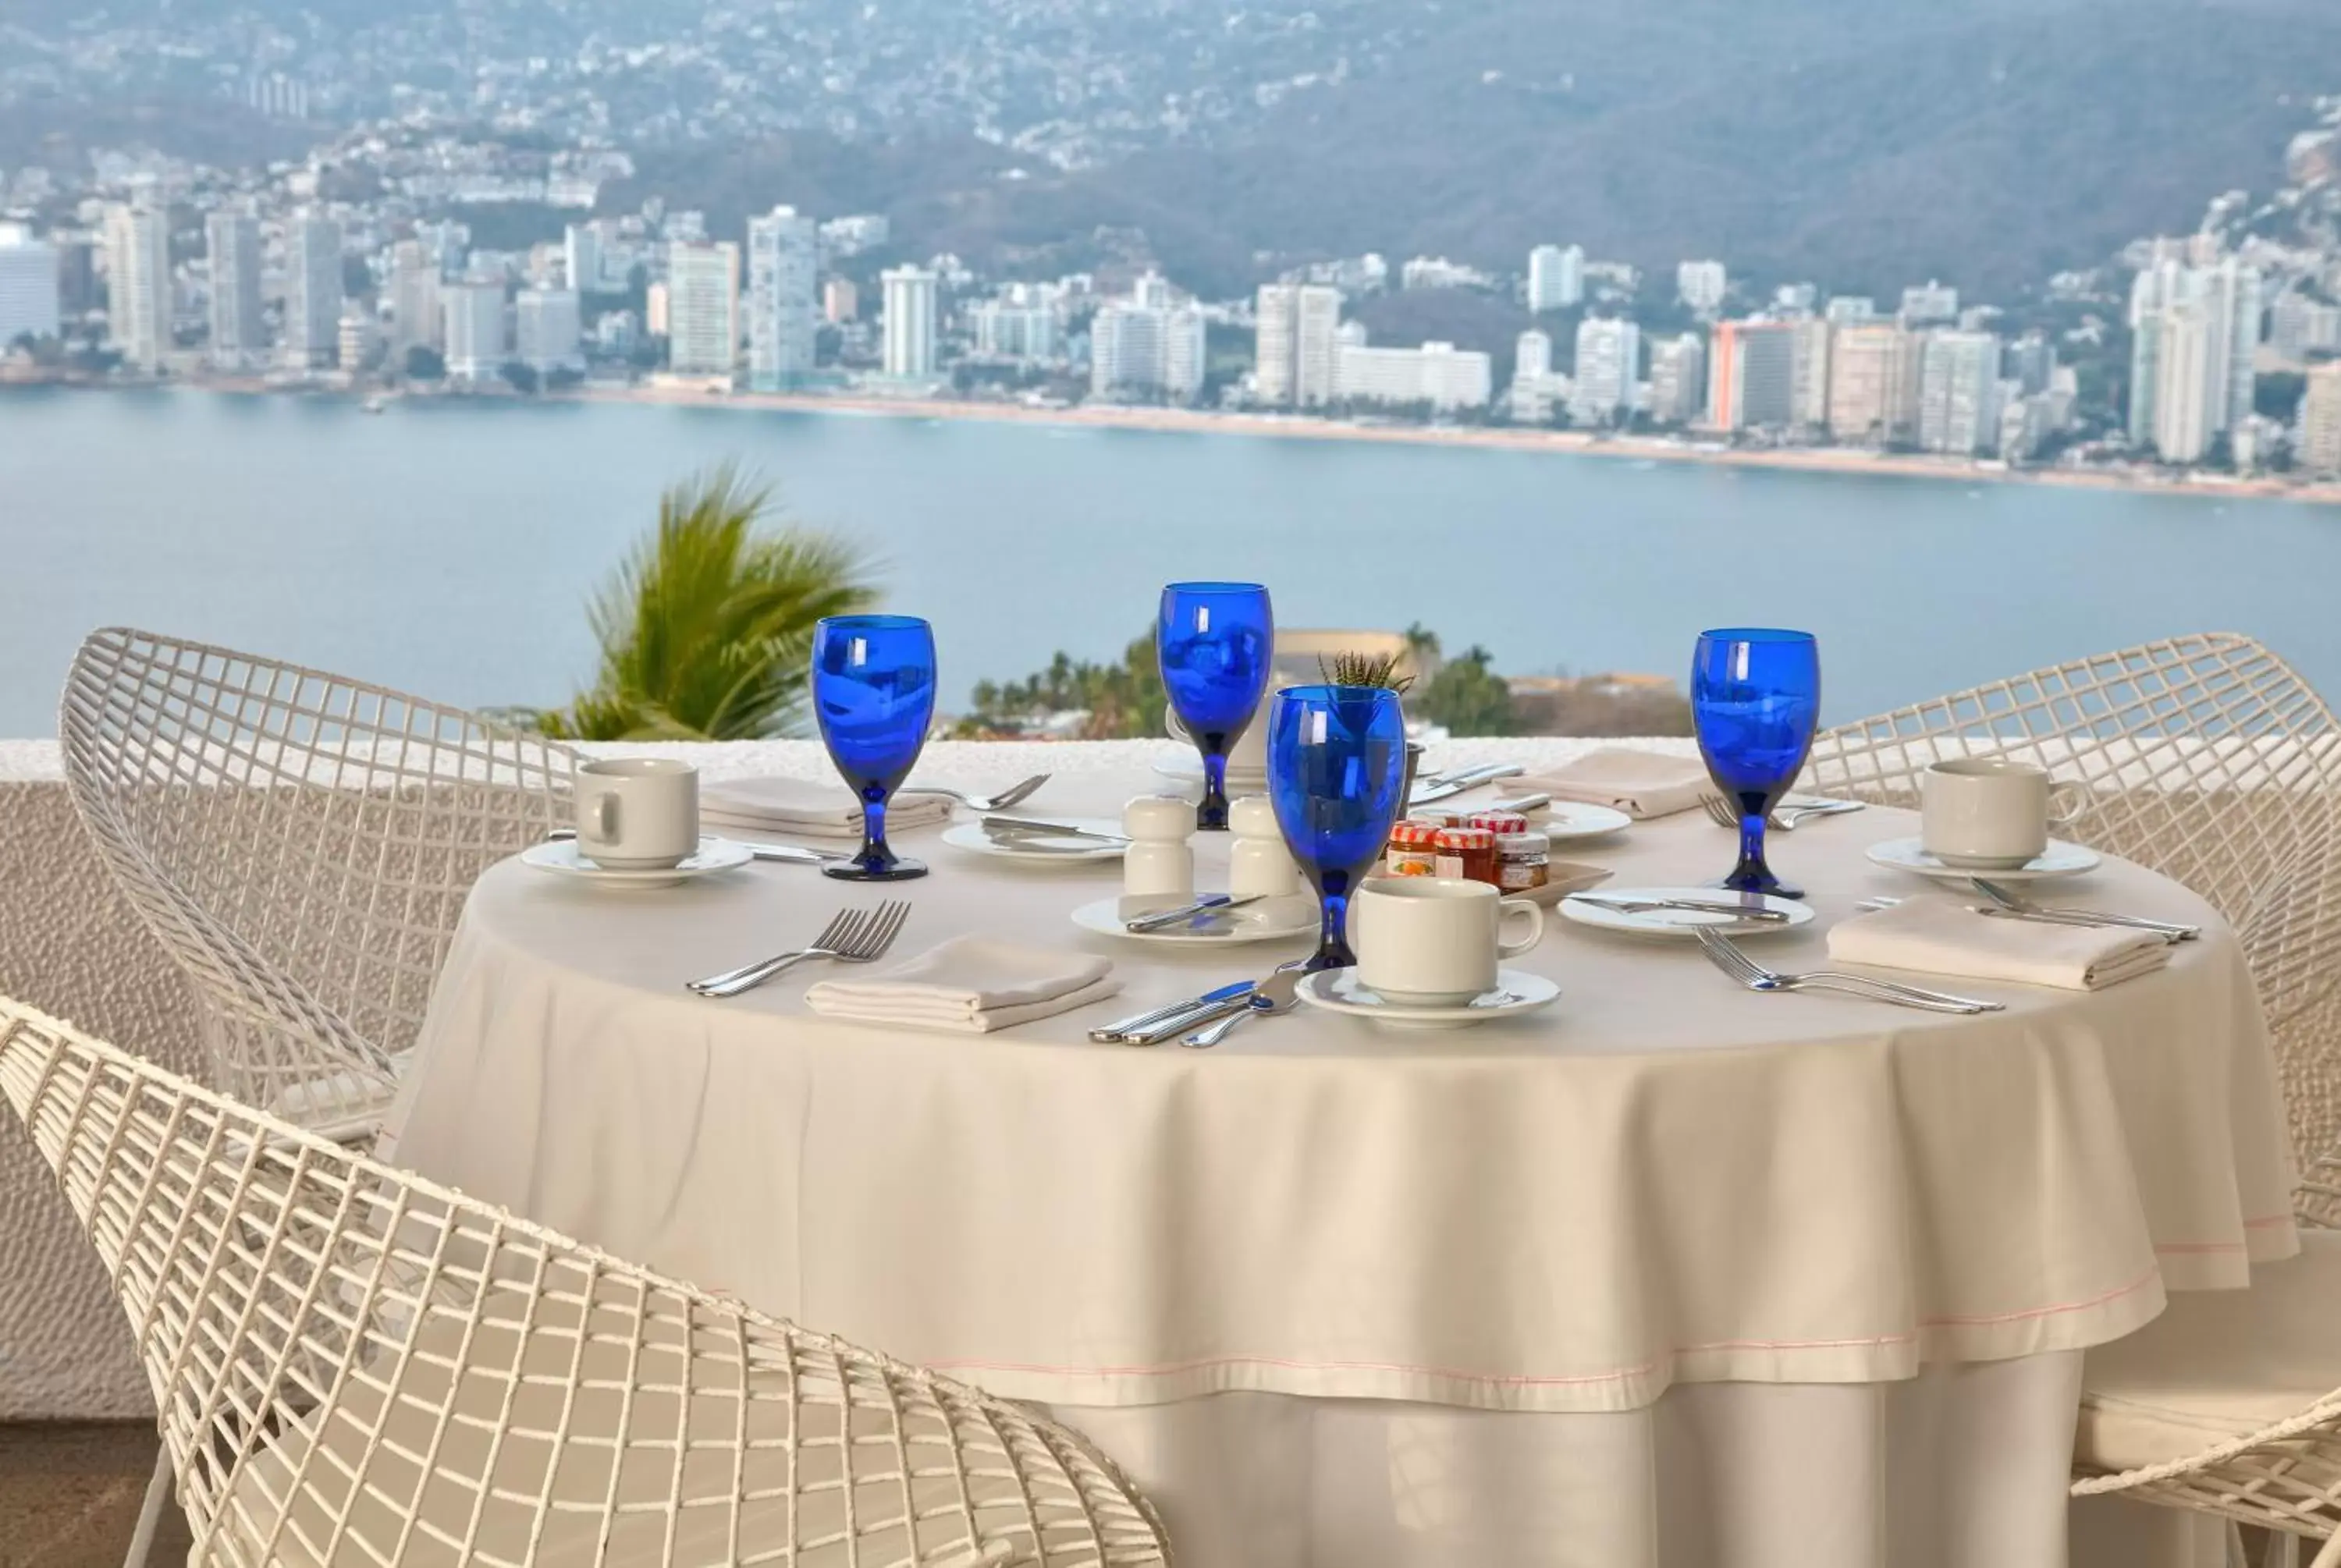 Restaurant/places to eat in Las Brisas Acapulco